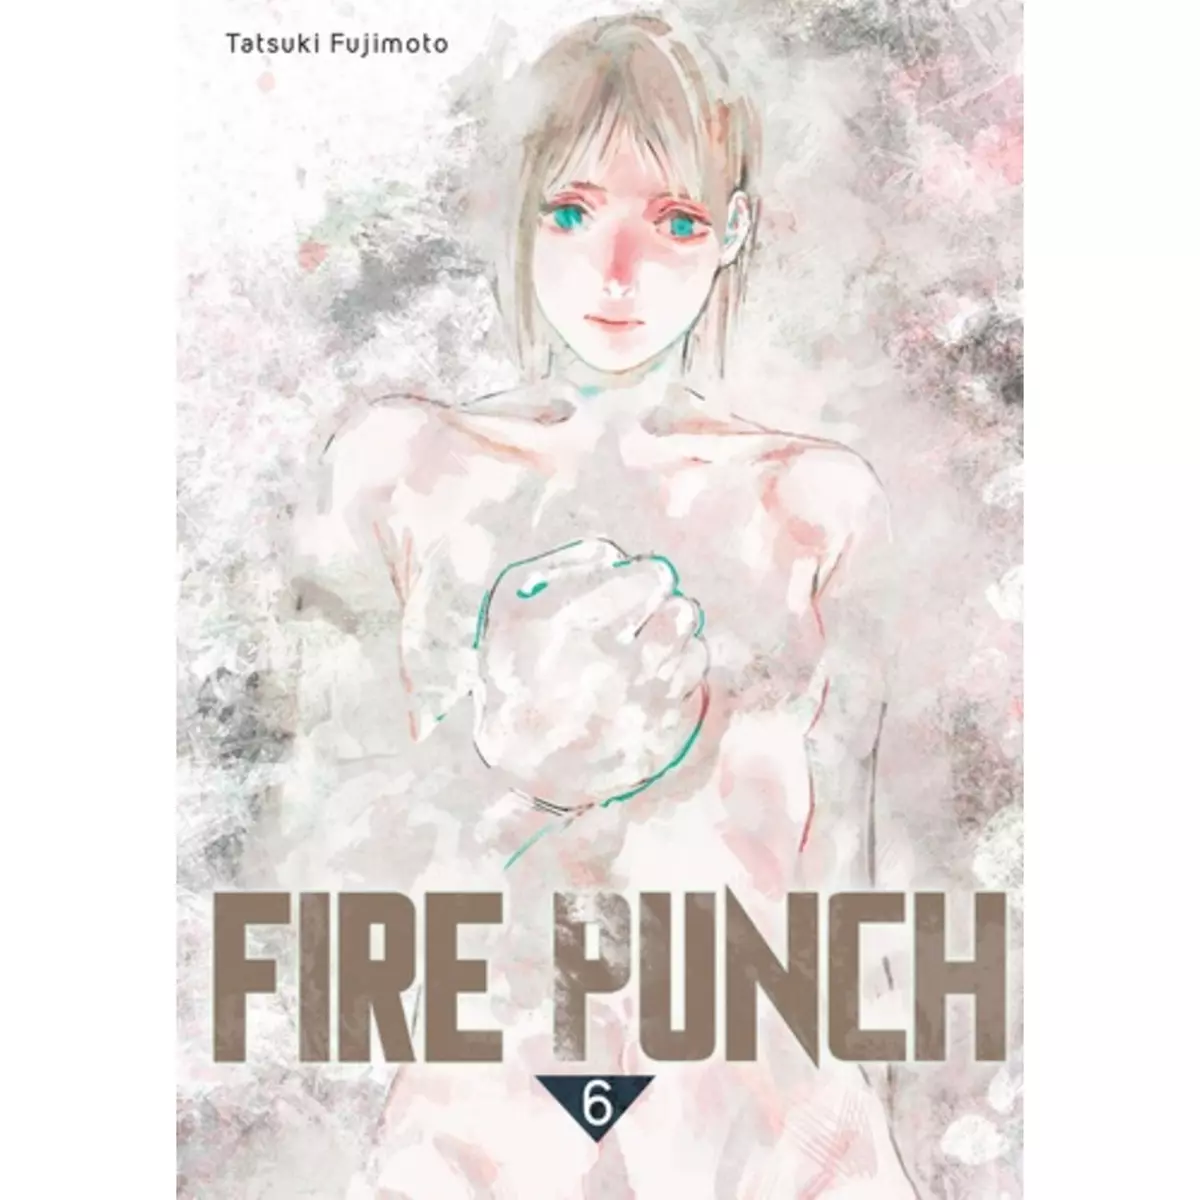  FIRE PUNCH TOME 6 , Fujimoto Tatsuki